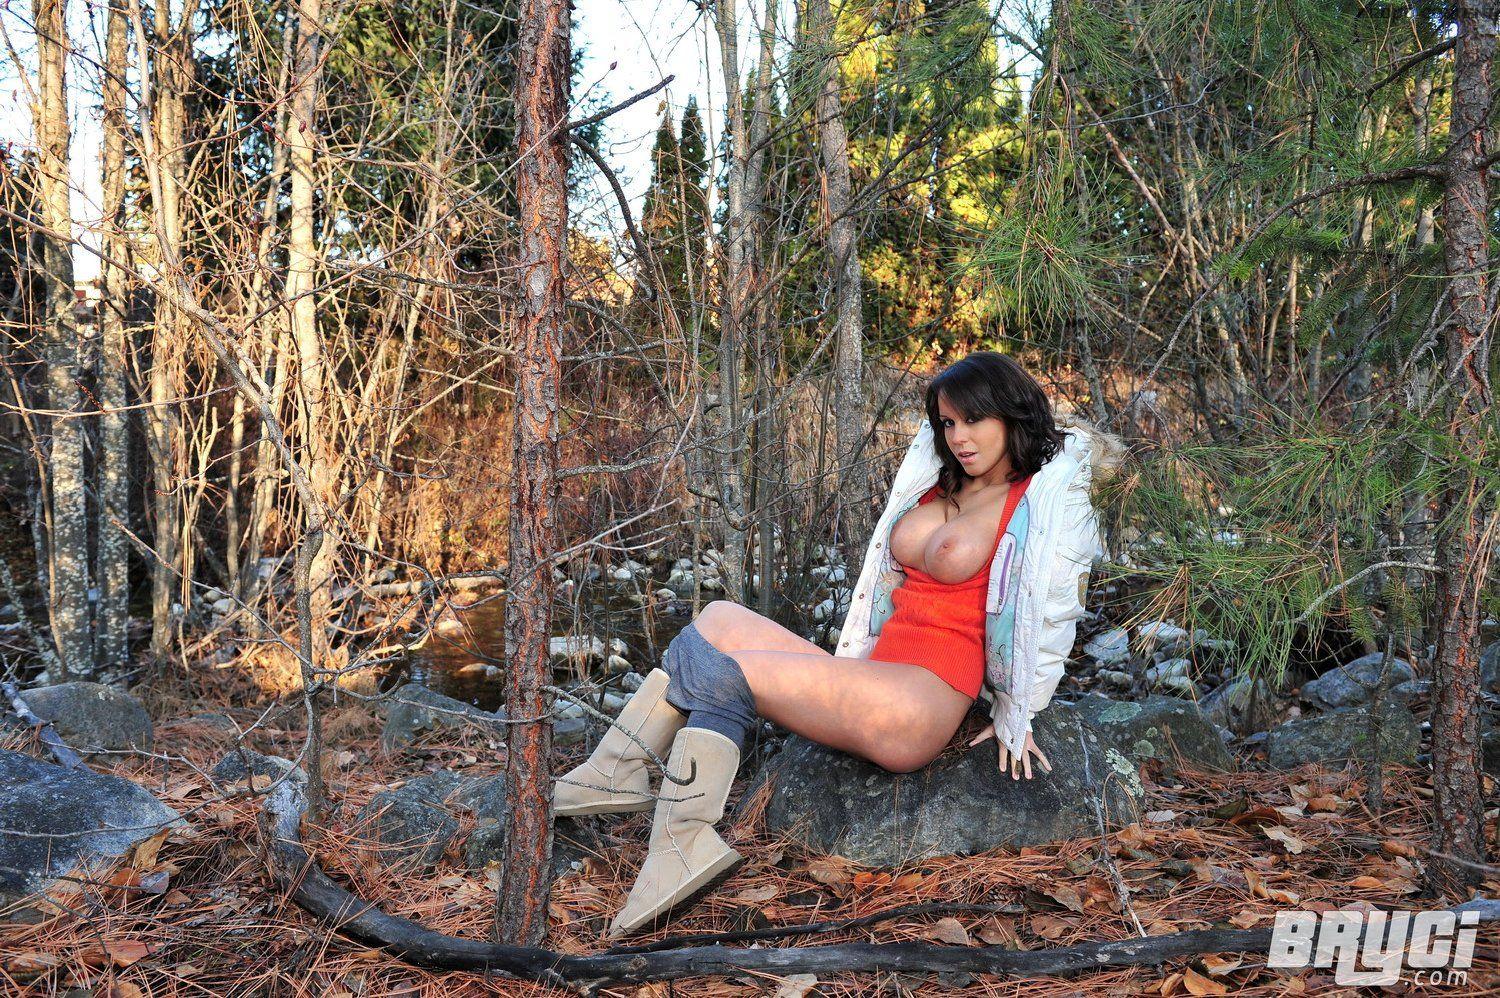 Bilder von Bryci, die ihre Titten draußen im Wald zeigt
 #53577102